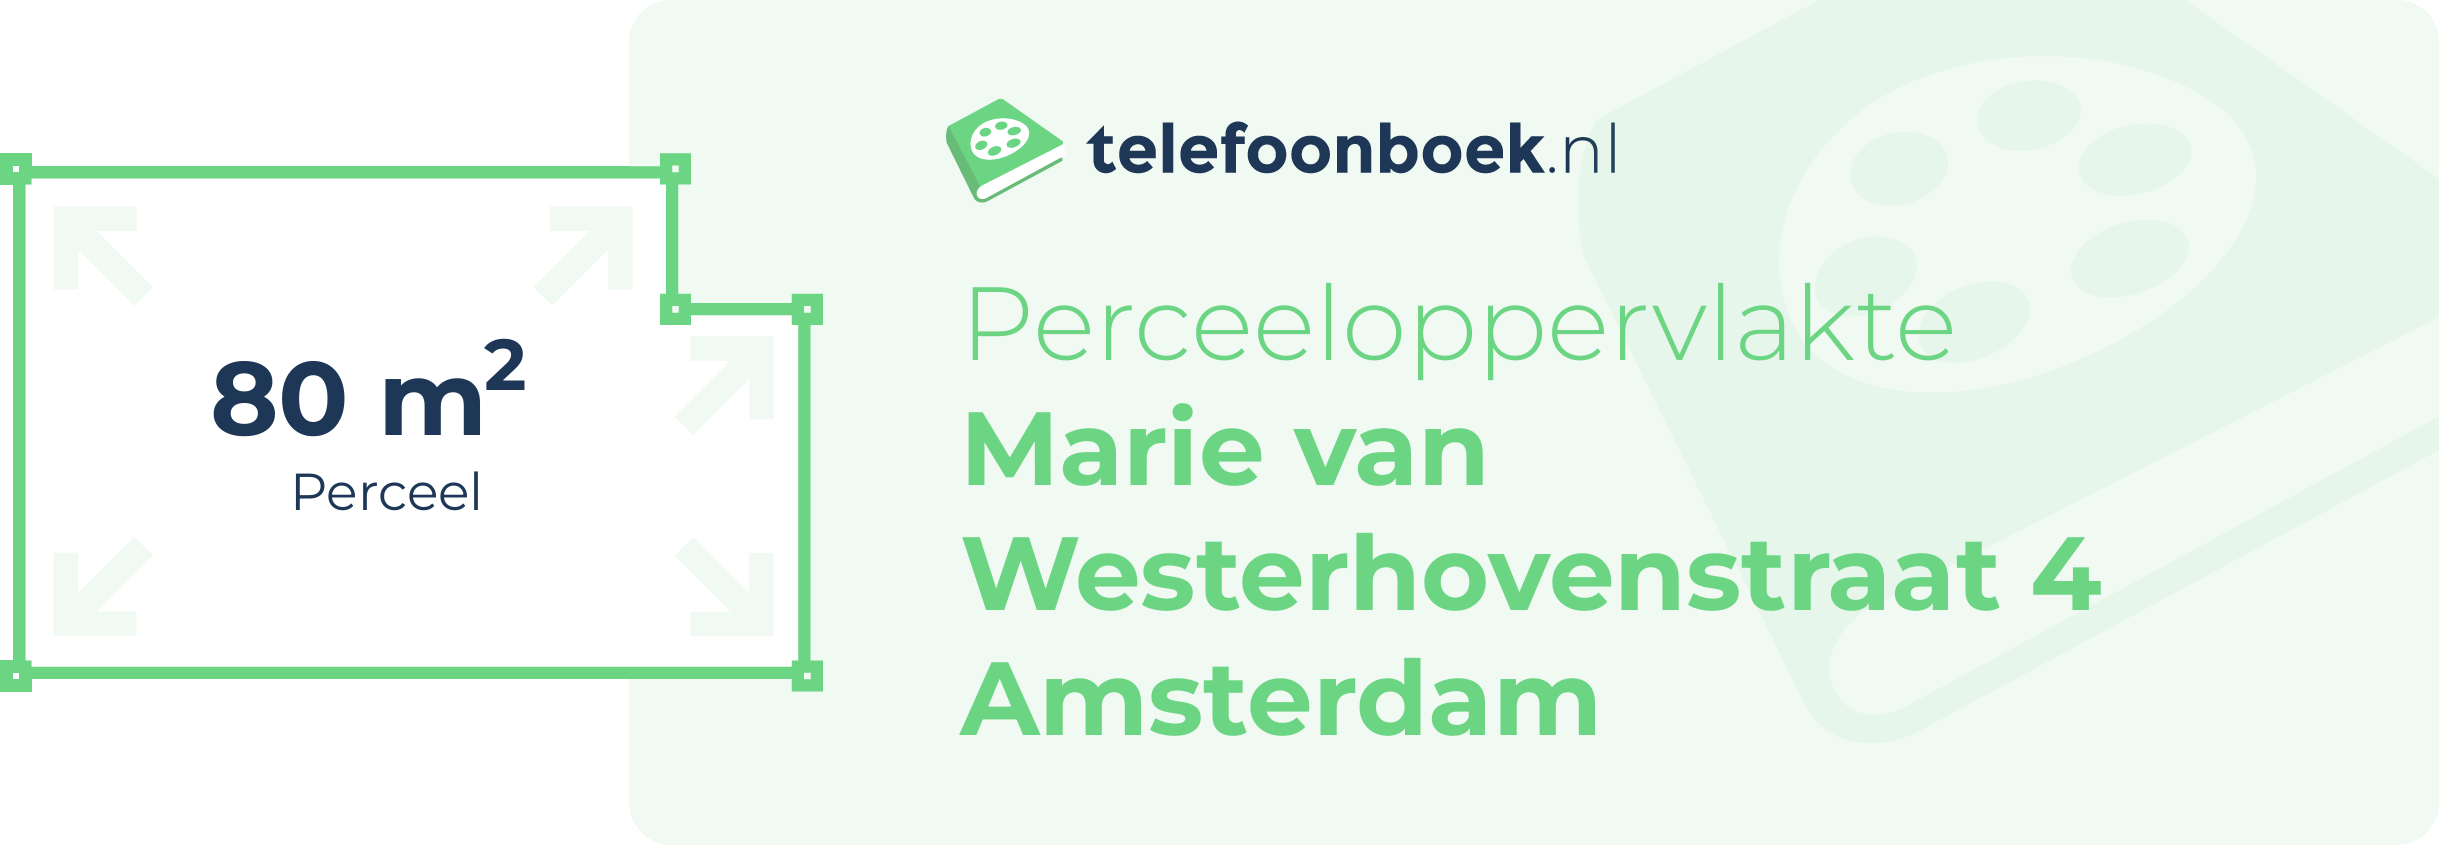 Perceeloppervlakte Marie Van Westerhovenstraat 4 Amsterdam